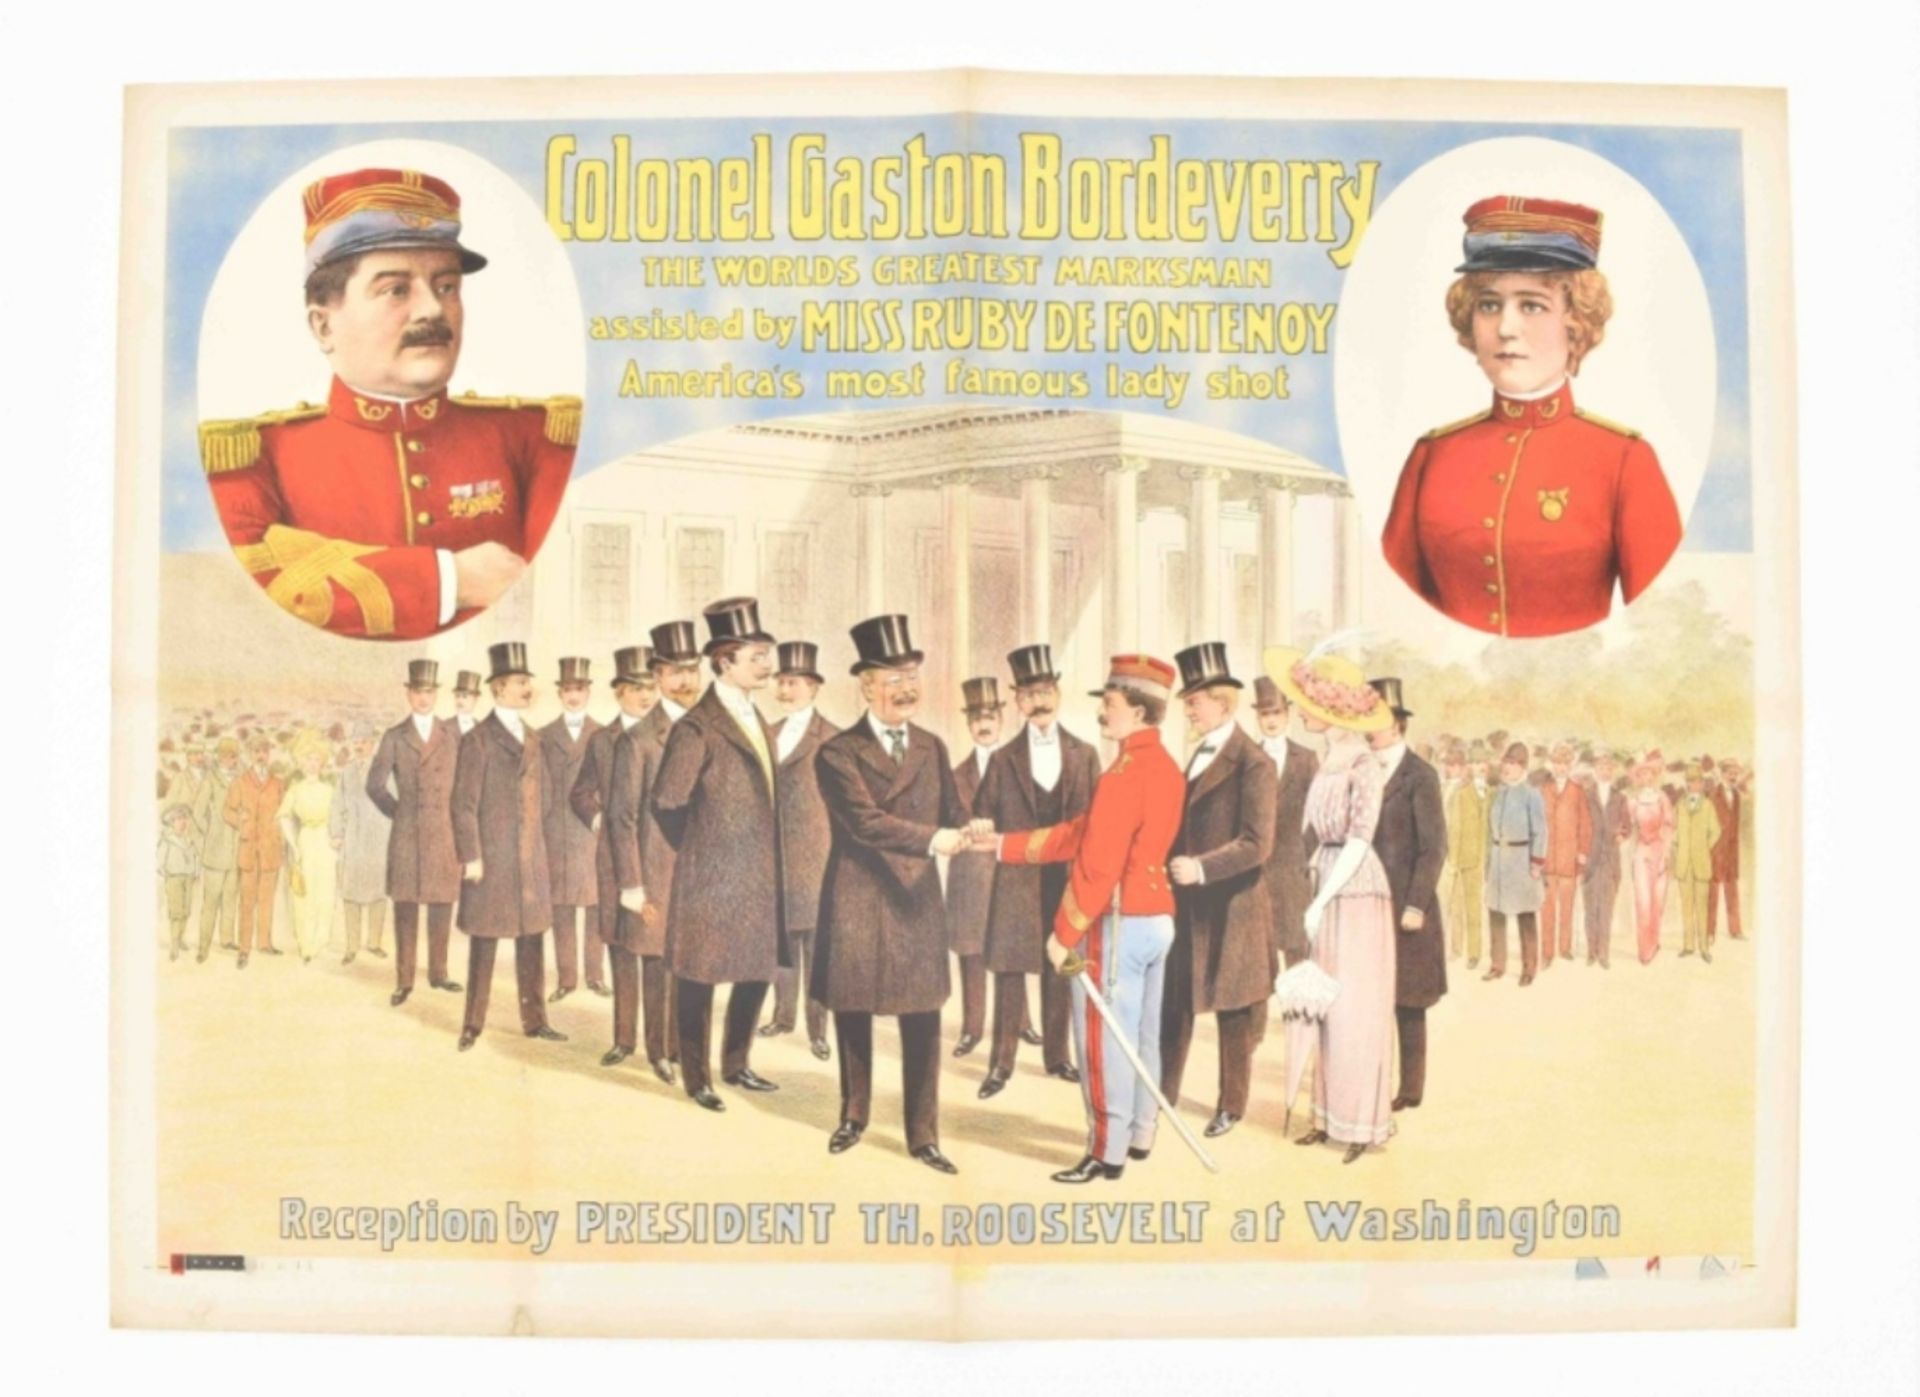 [Entertainment] Colonel Gaston Bordeverry. Friedländer, Hamburg, 1913